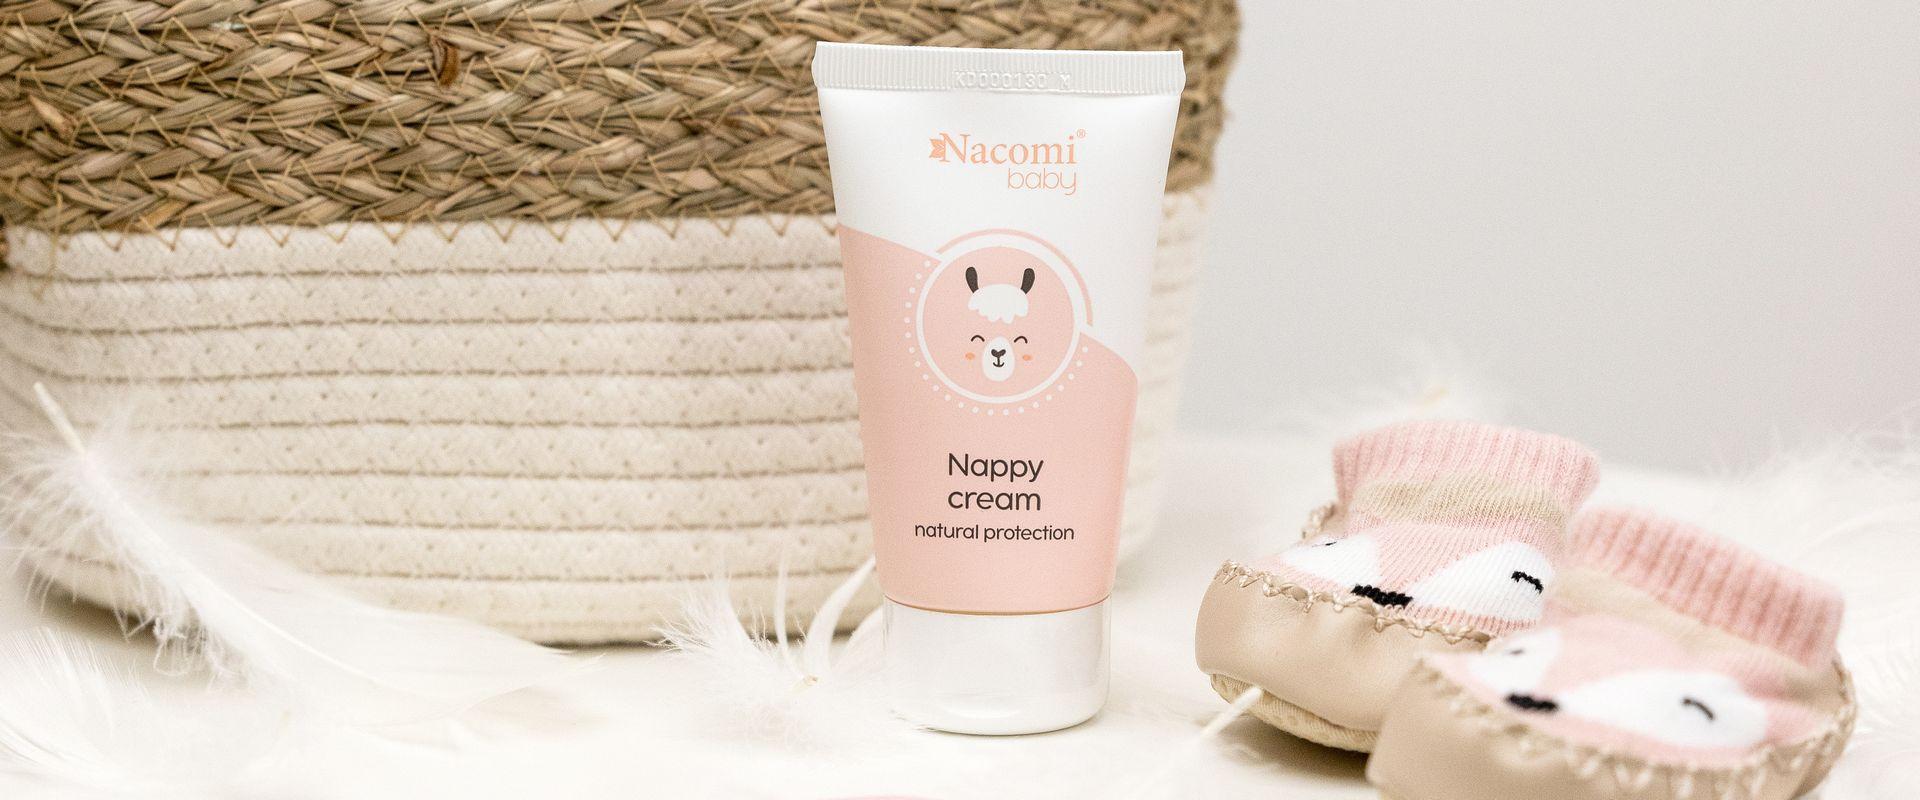 Nacomi wprowadziło kosmetyki dla niemowląt i dzieci